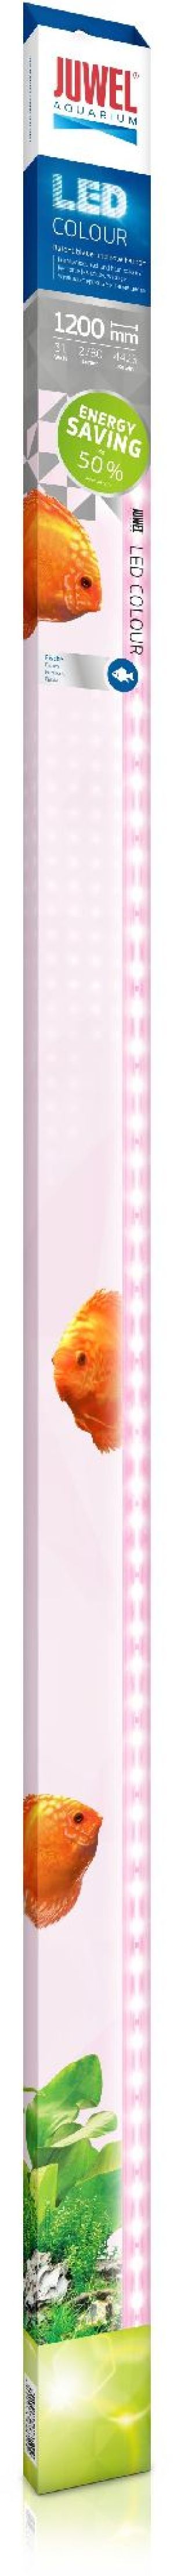 Juwel Świetlówka Colour LED 1200mm, 31W 1